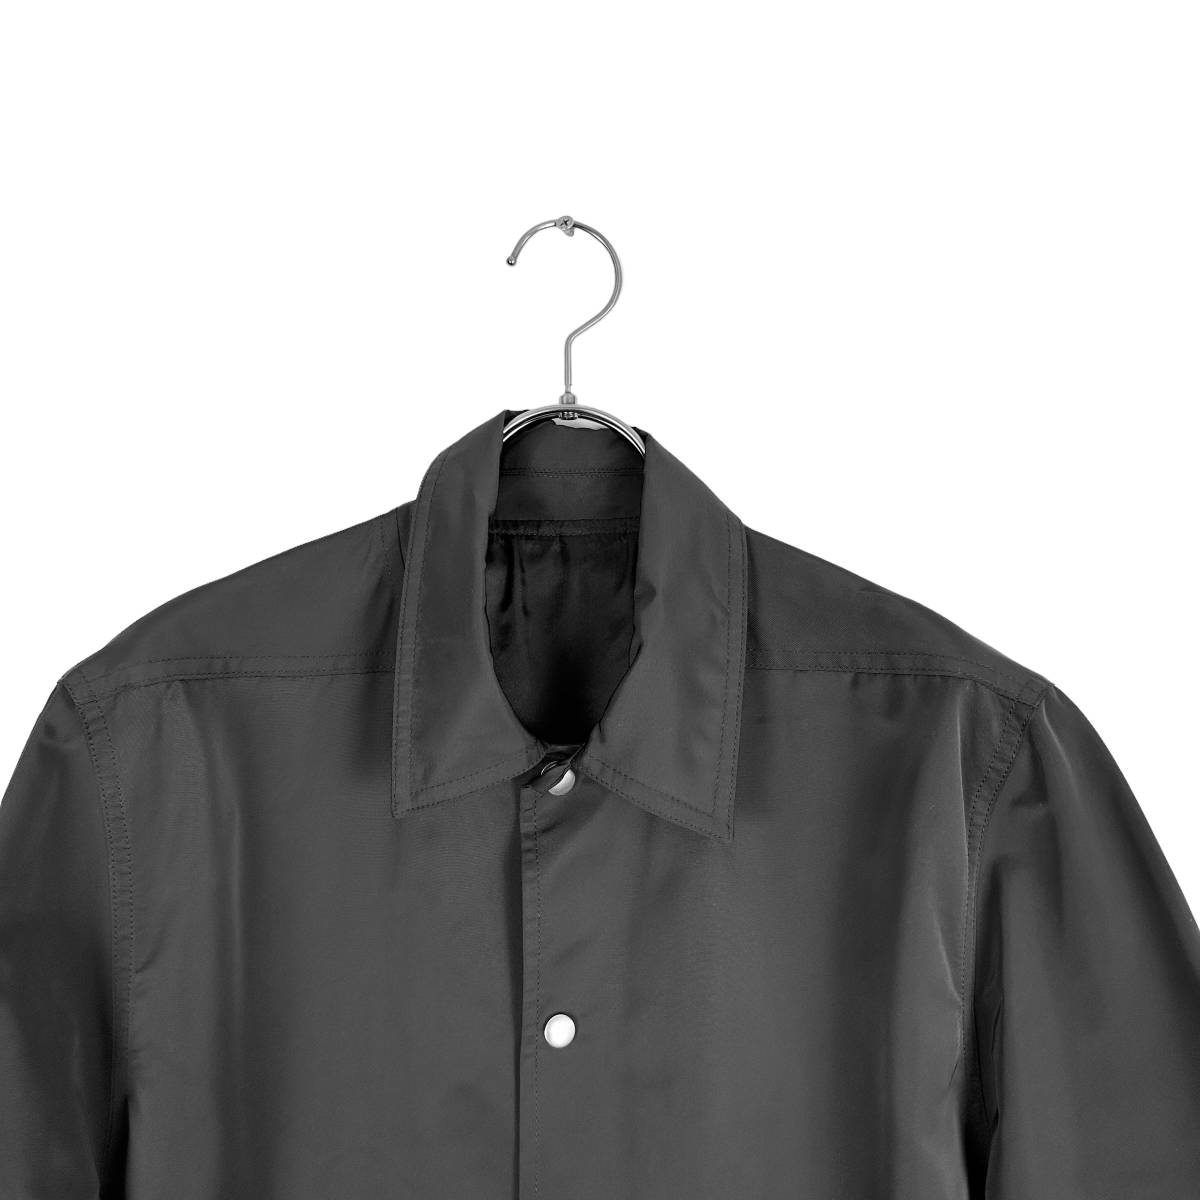 Rick Owens(リックオウエンス) shirts jacket (black)